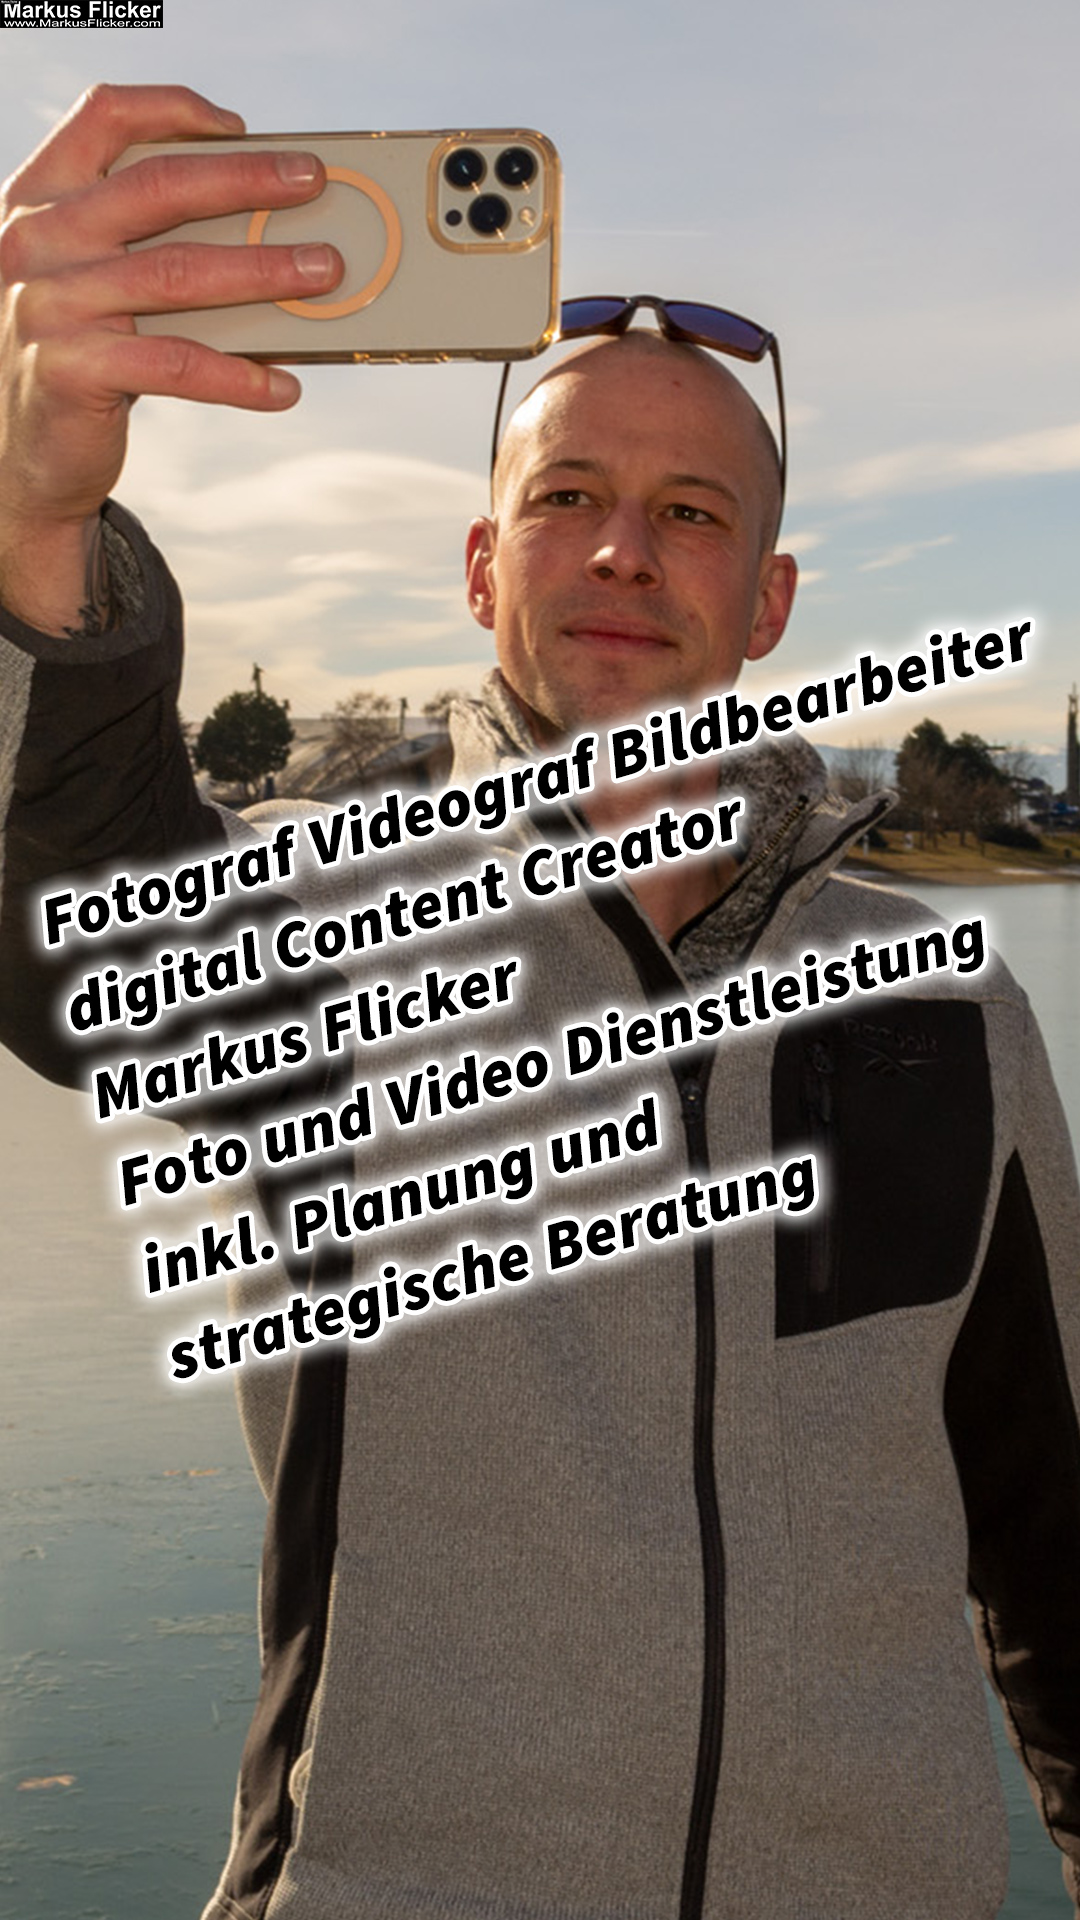 Fotograf Videograf Bildbearbeiter digital Content Creator Markus Flicker Foto und Video Dienstleistung inkl. Planung und strategische Beratung